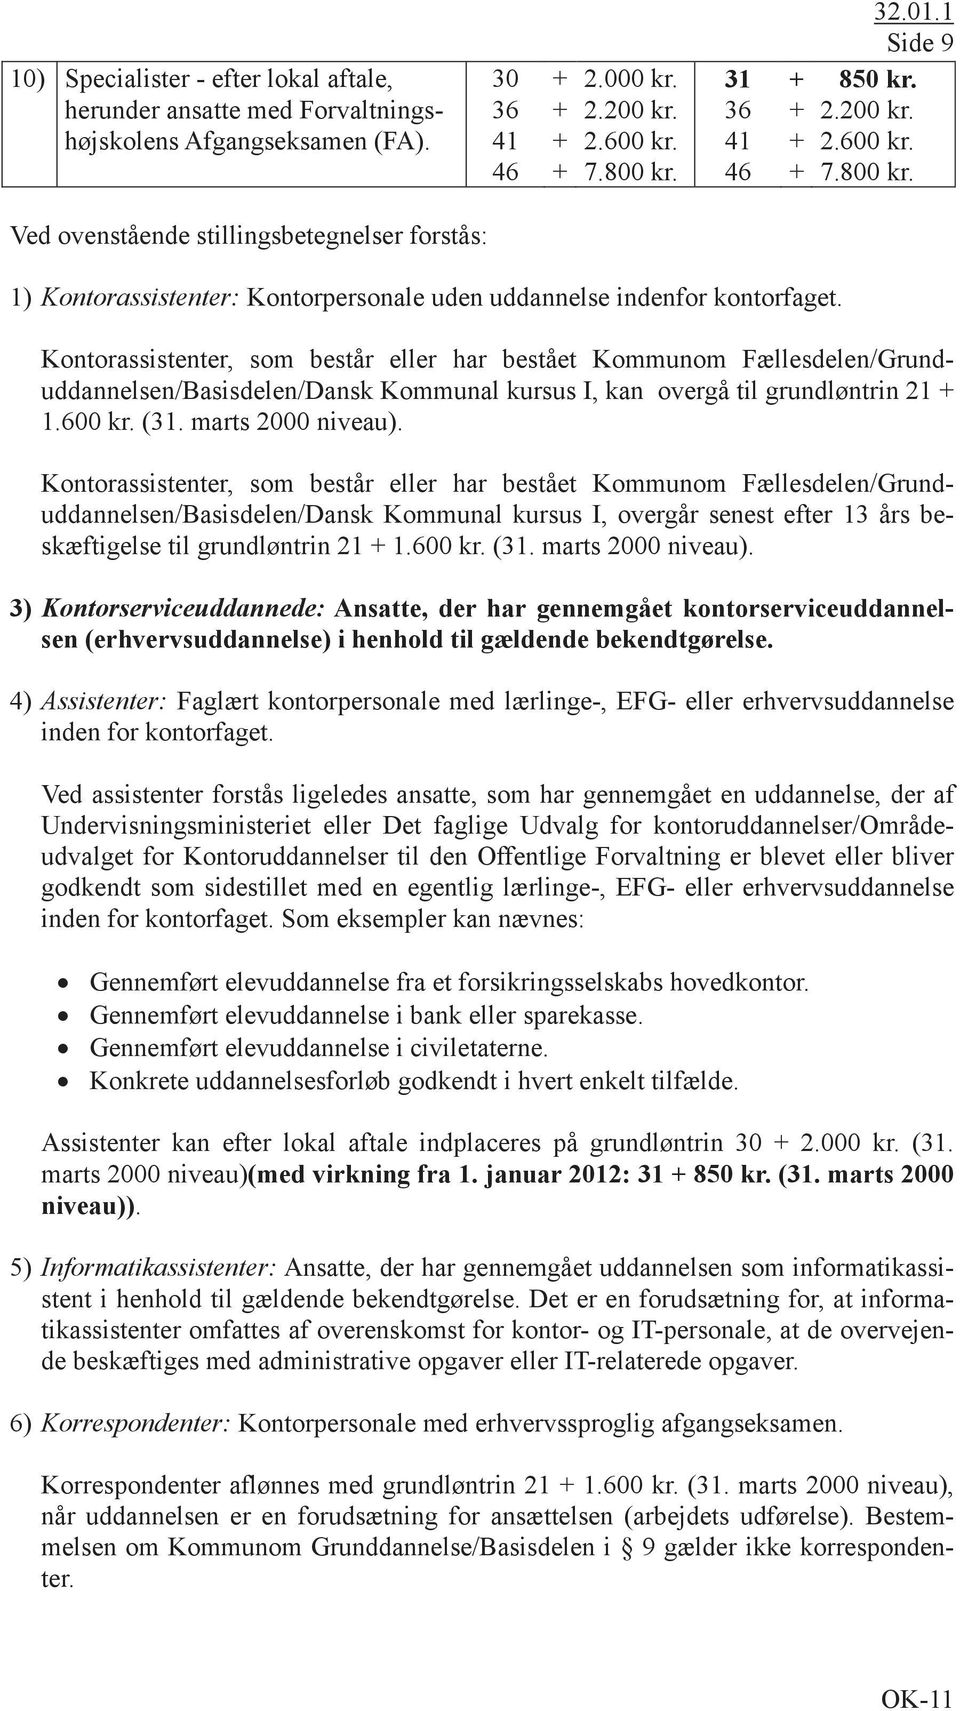 Kontorassistenter, som består eller har bestået Kommunom Fællesdelen/Grunduddannelsen/Basisdelen/Dansk Kommunal kursus I, kan overgå til grundløntrin 21 + 1.600 kr. (31. marts 2000 niveau).